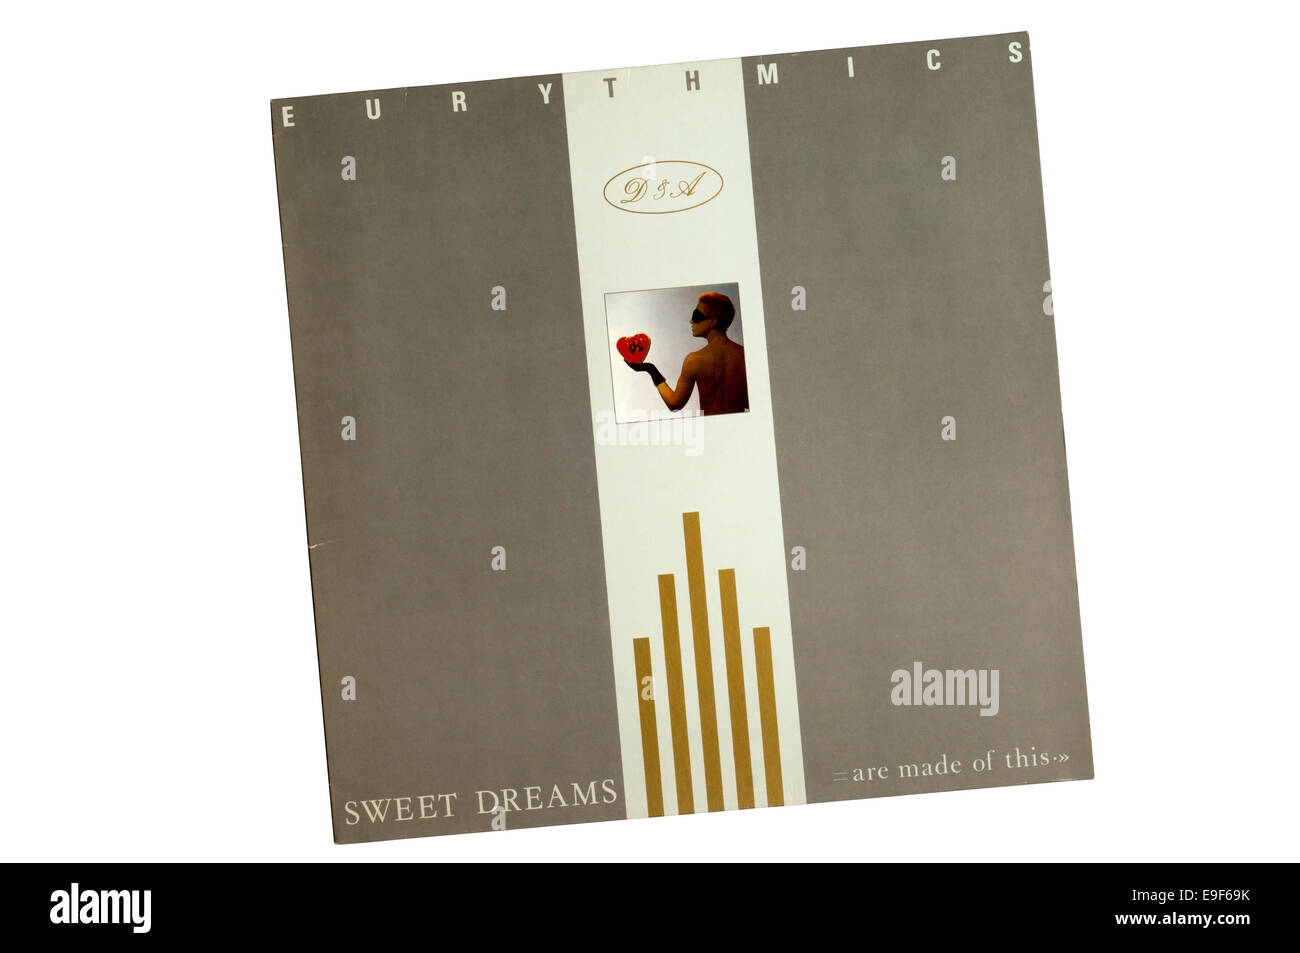 Sweet Dreams (sono fatti di questo) era il secondo album in studio da British new wave duo degli Eurythmics, rilasciato nel 1983. Foto Stock